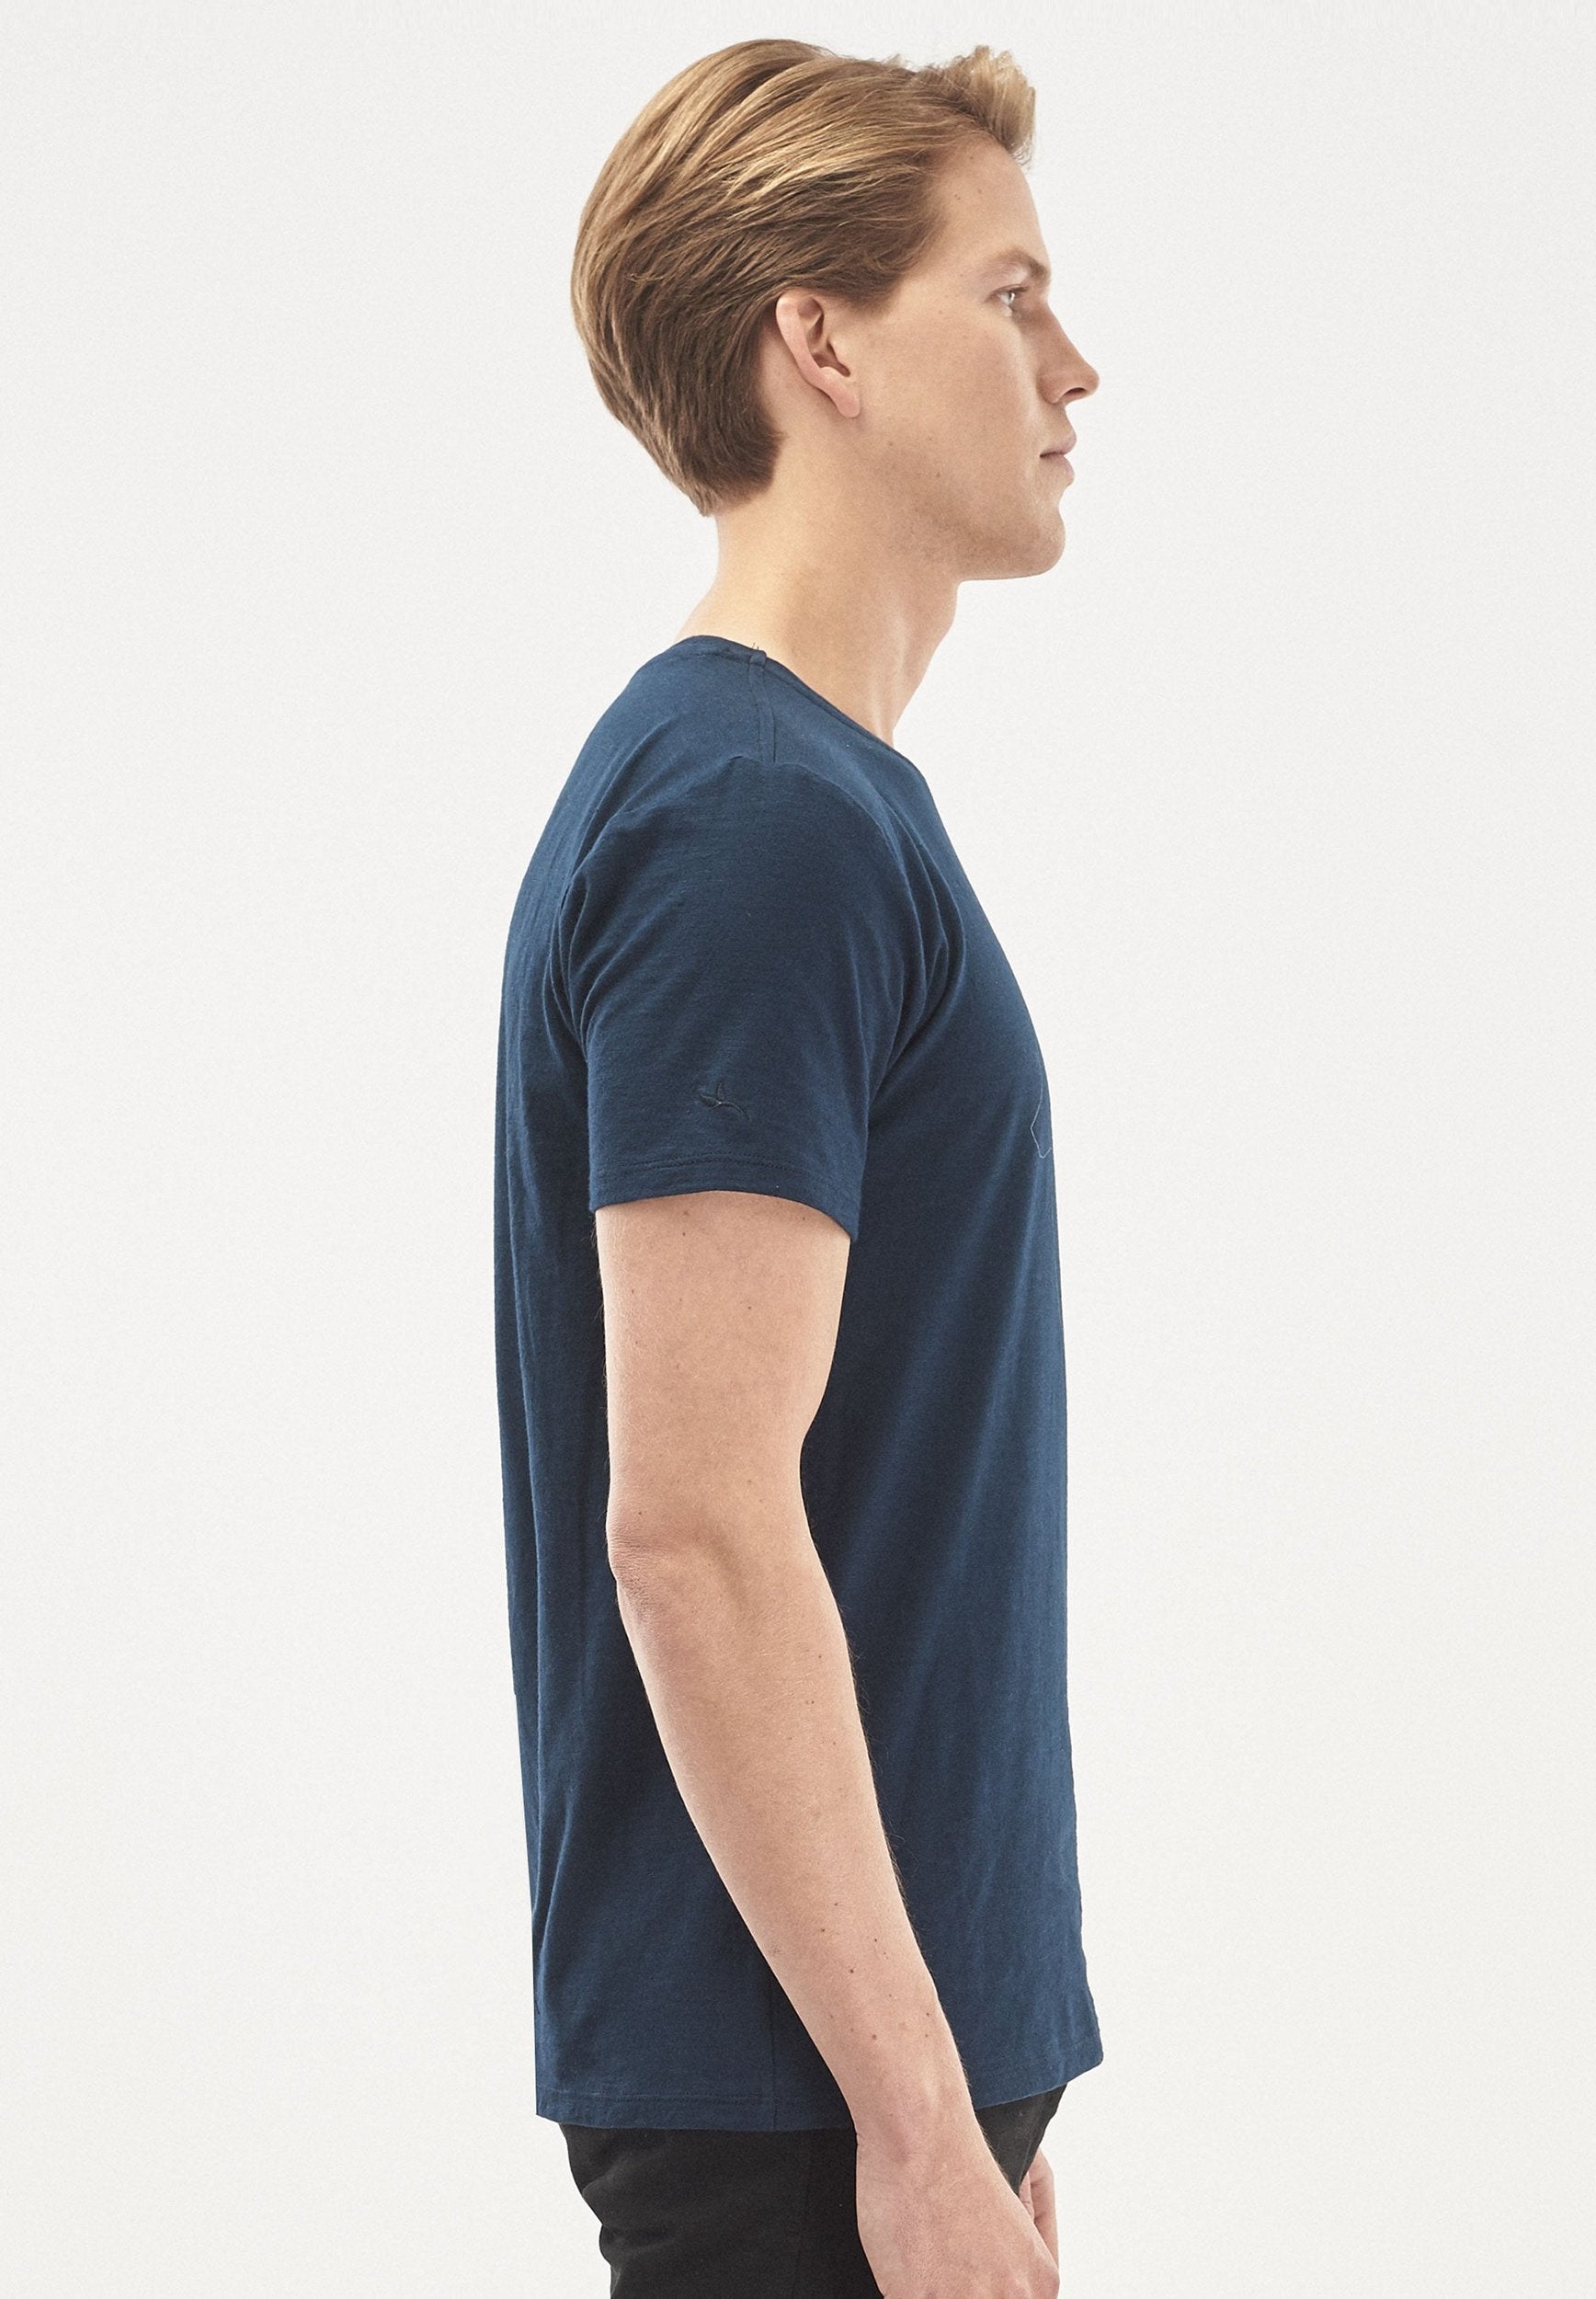 T-Shirt aus Bio-Baumwolle mit Bär-Print